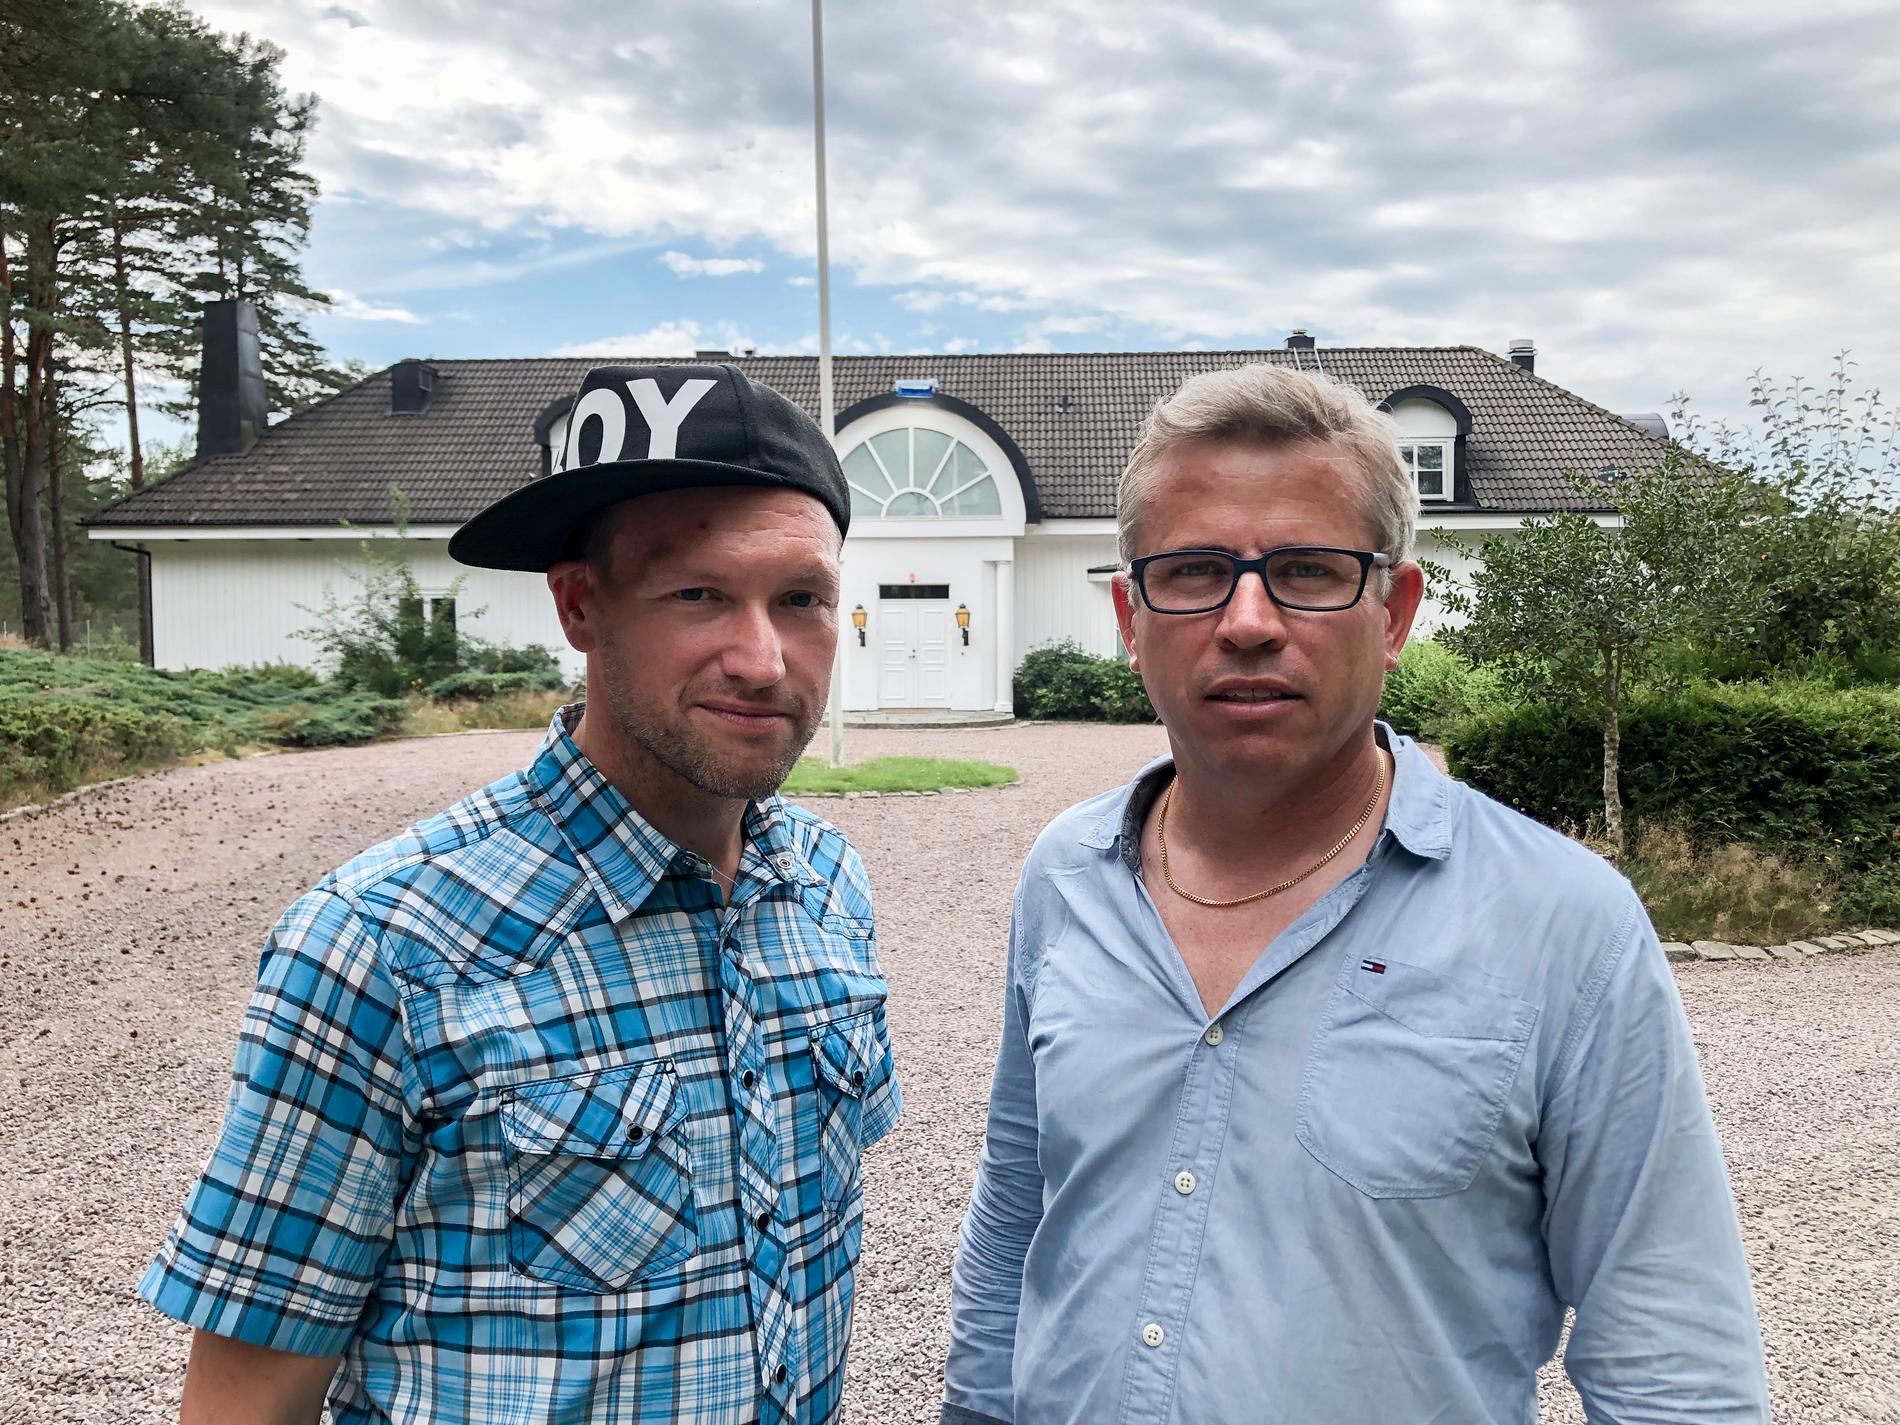 Torbjörn Ek, reporter, och Anders Deros, fotograf, Aftonbladets team på plats vid ”Ex on the beach”-inspelningen.